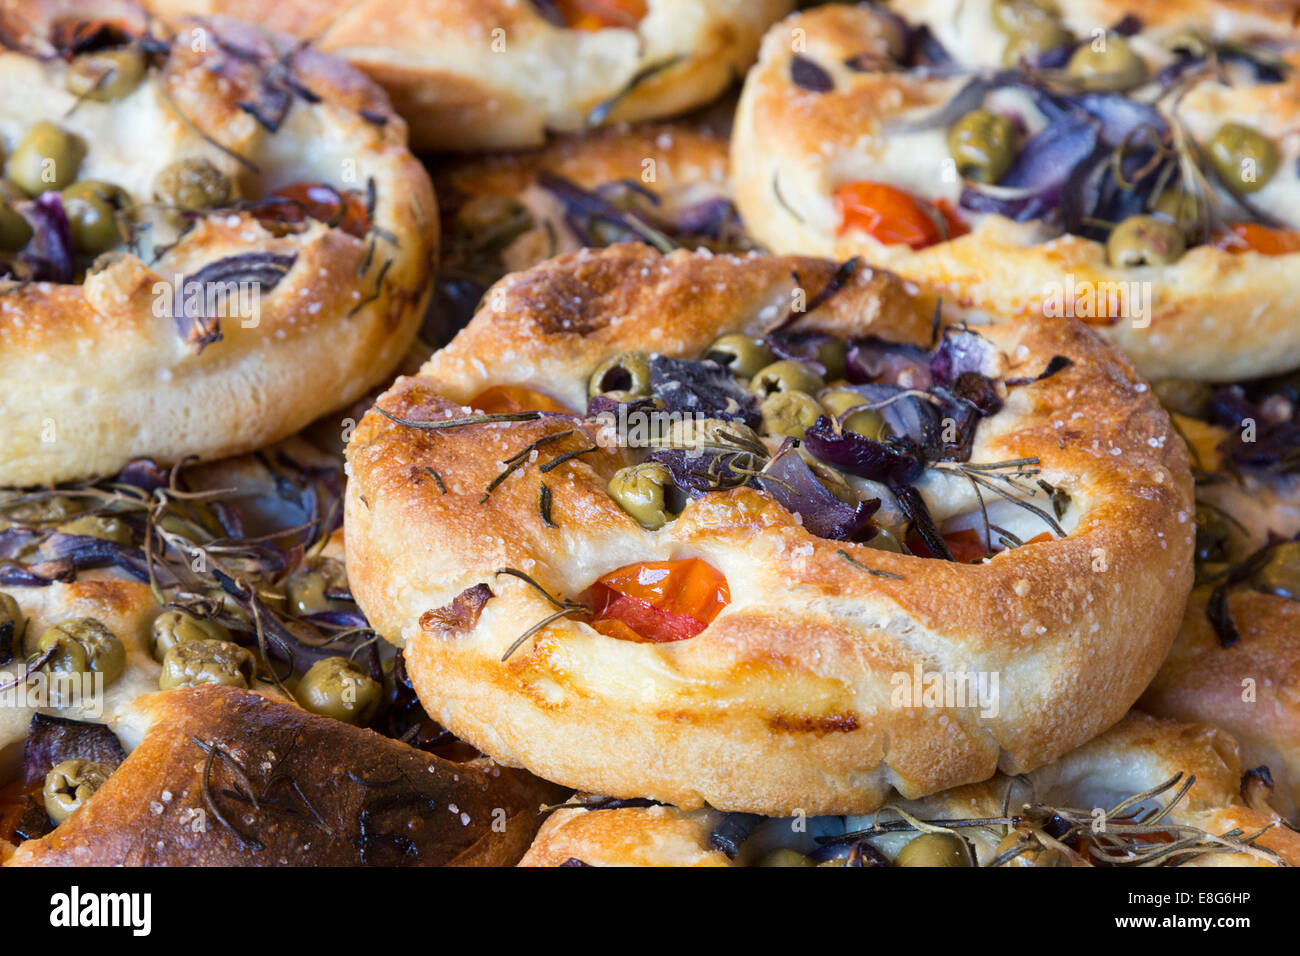 Focaccia pane artigianale, Italiano flatbread con erbe aromatiche, le olive e i pomodori. Foto Stock